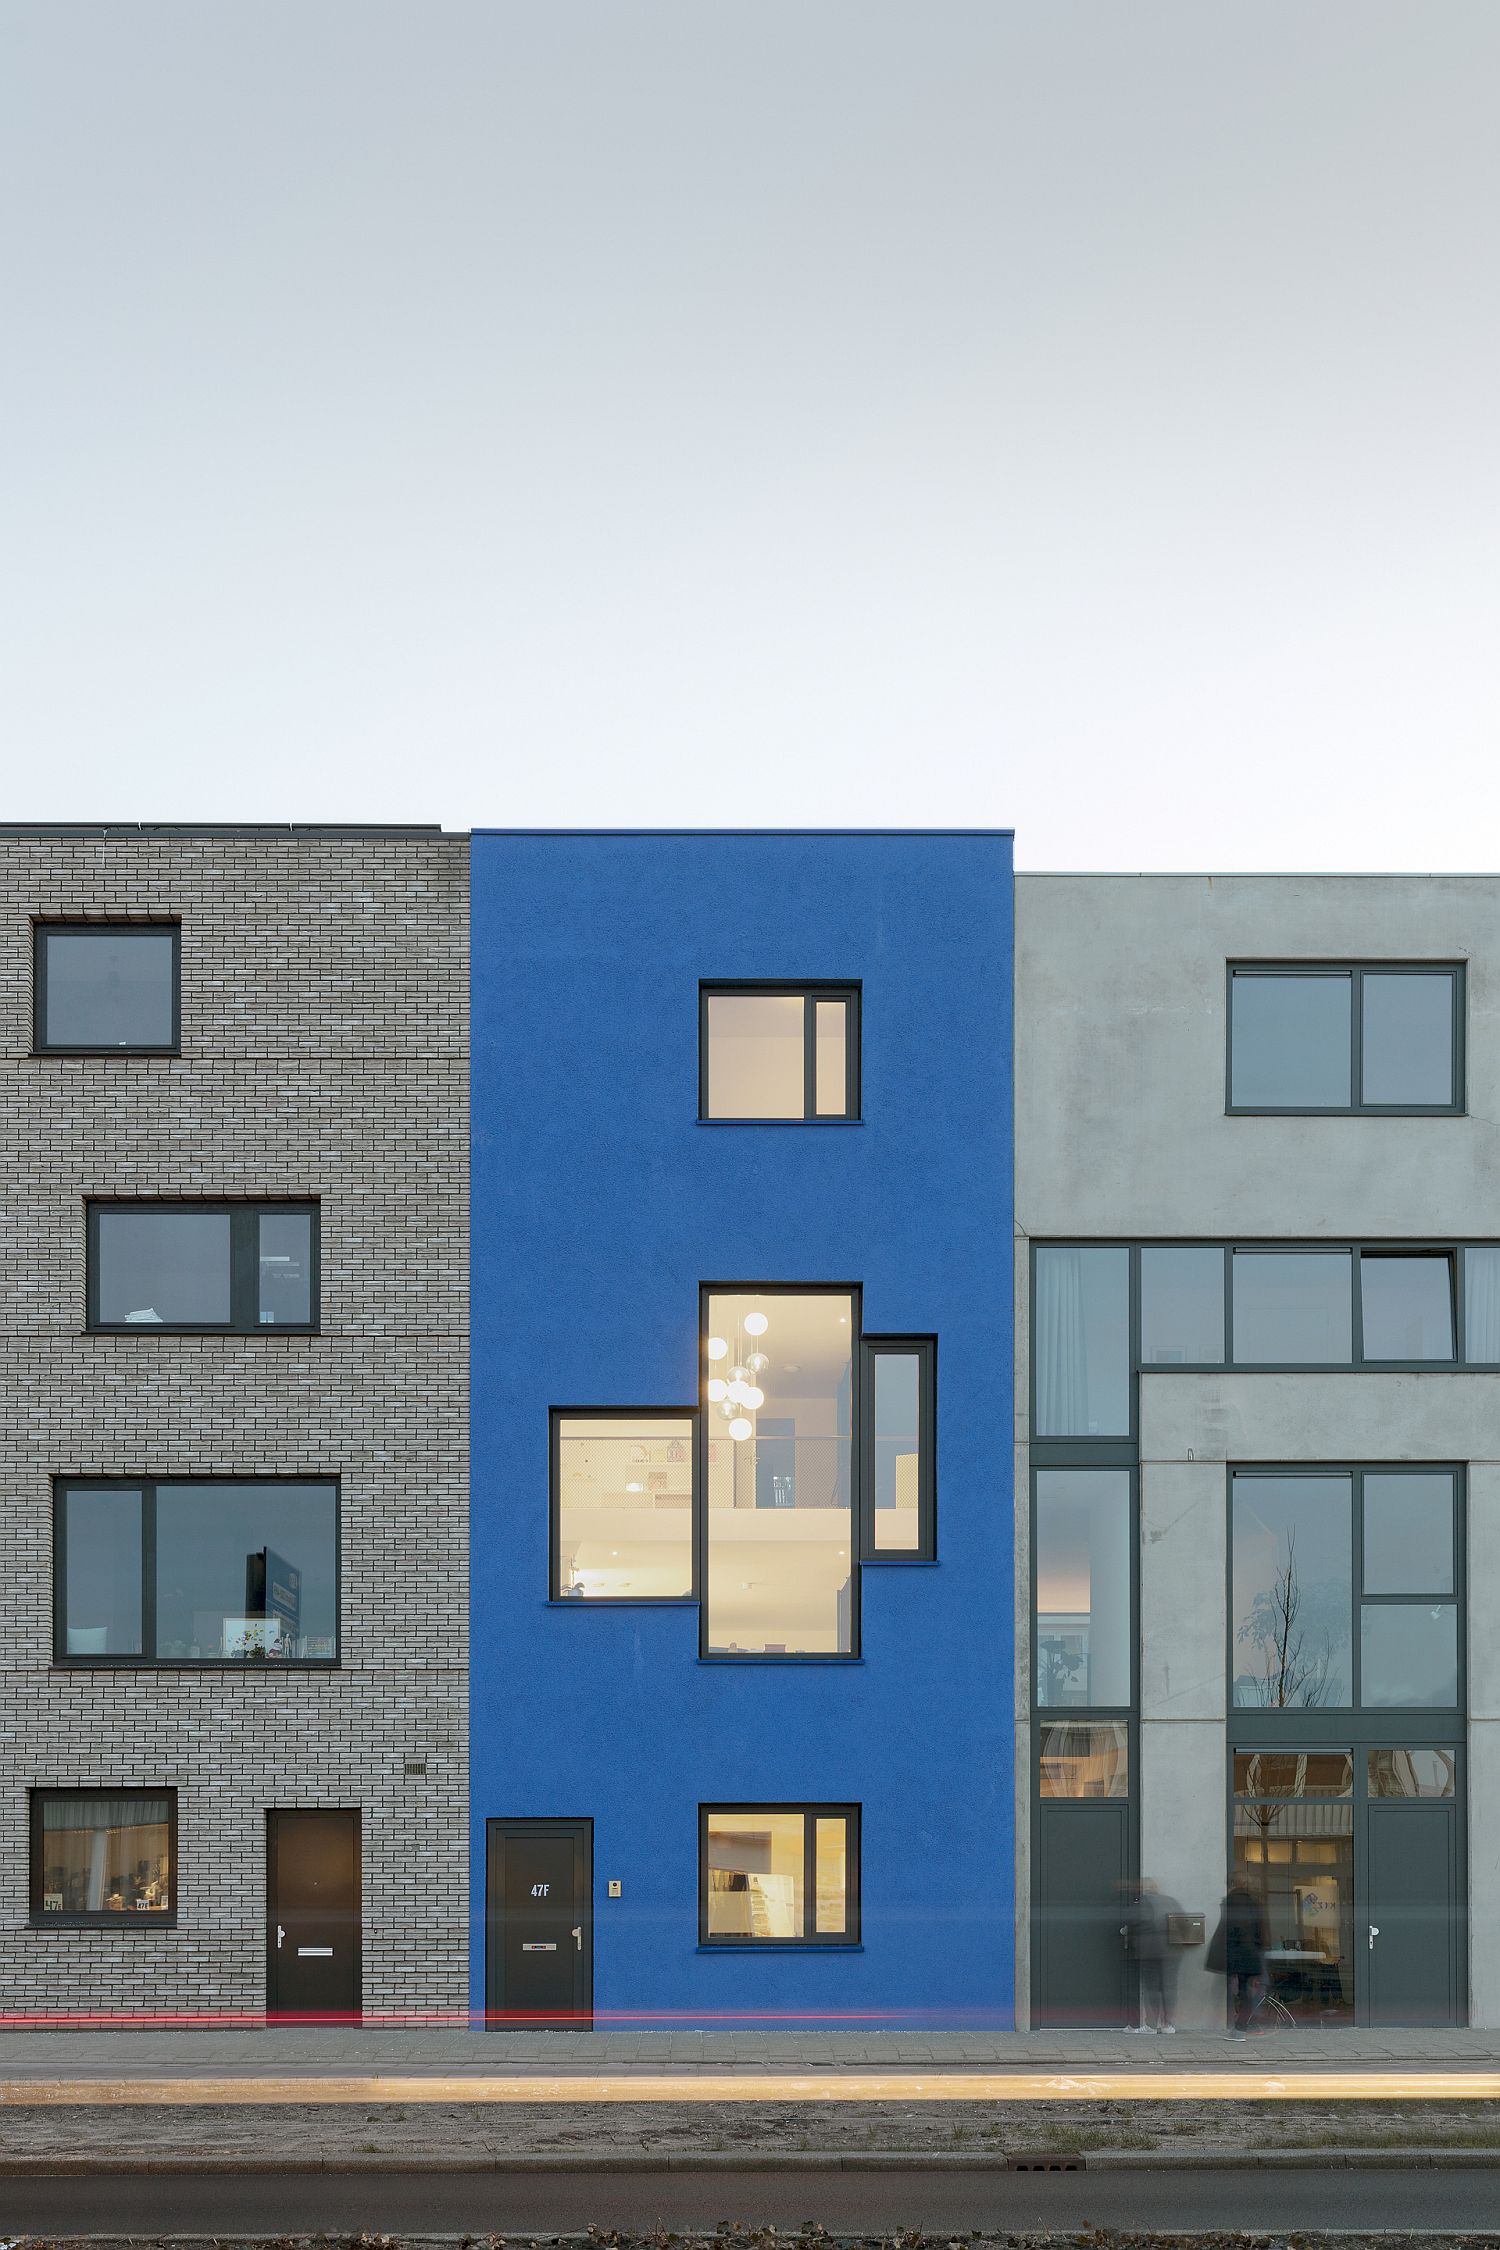 Yves-Klein-Blue-facade-of-the-unique-Dutch-home